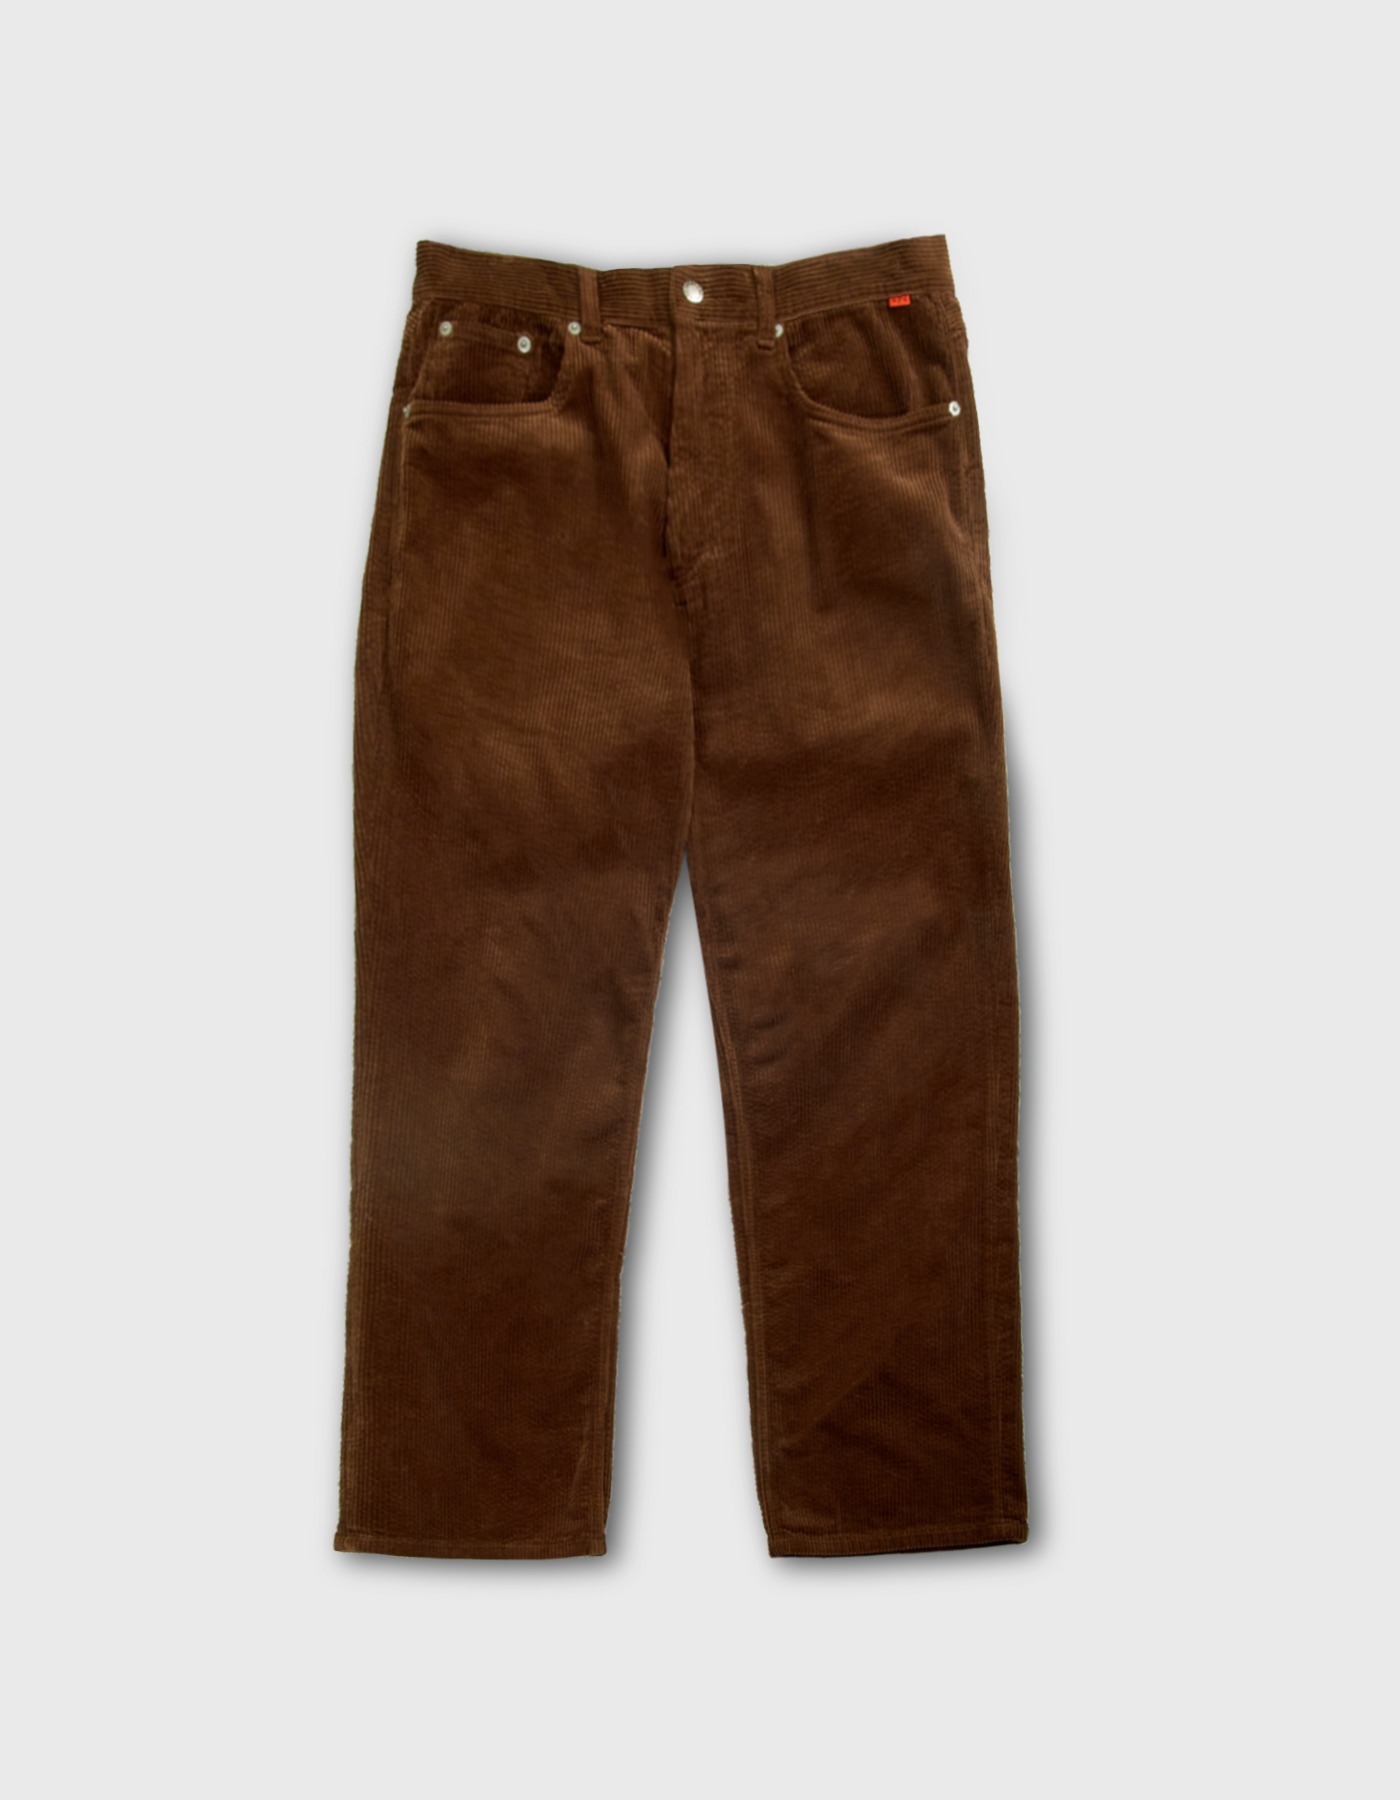 8W CORDUROY PANTS (M) / Brown